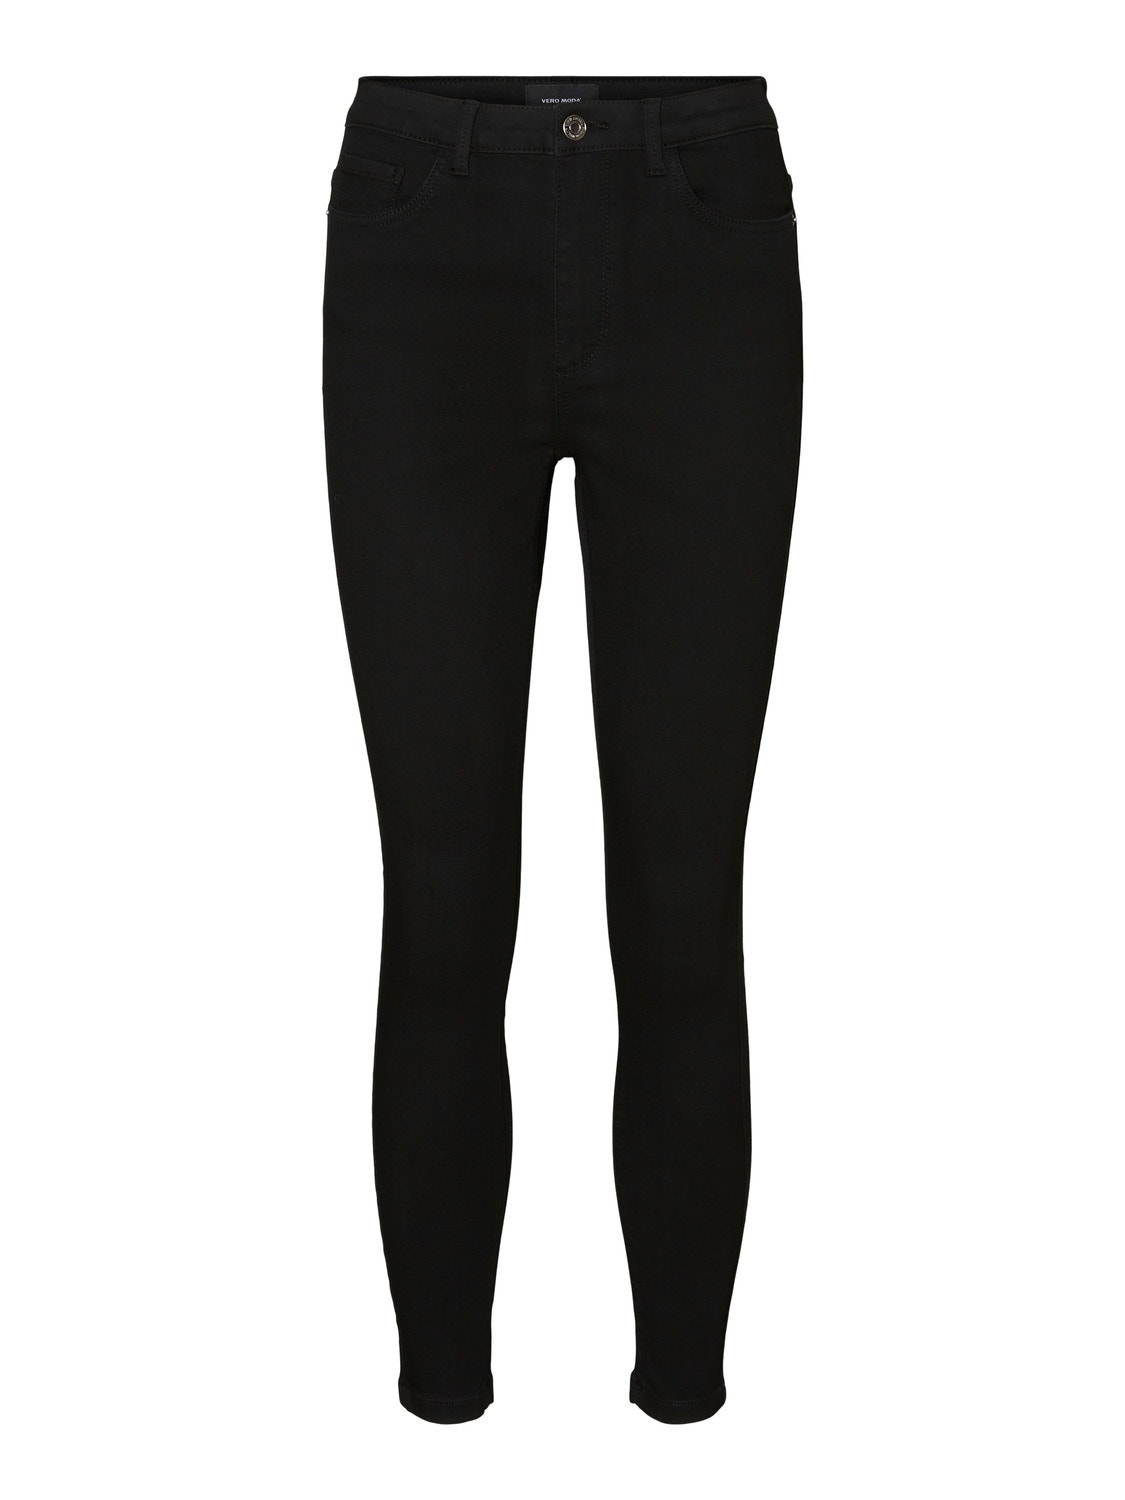 Vero Moda VMSOPHIA Skinny Fit Jeans -Black - 10241288